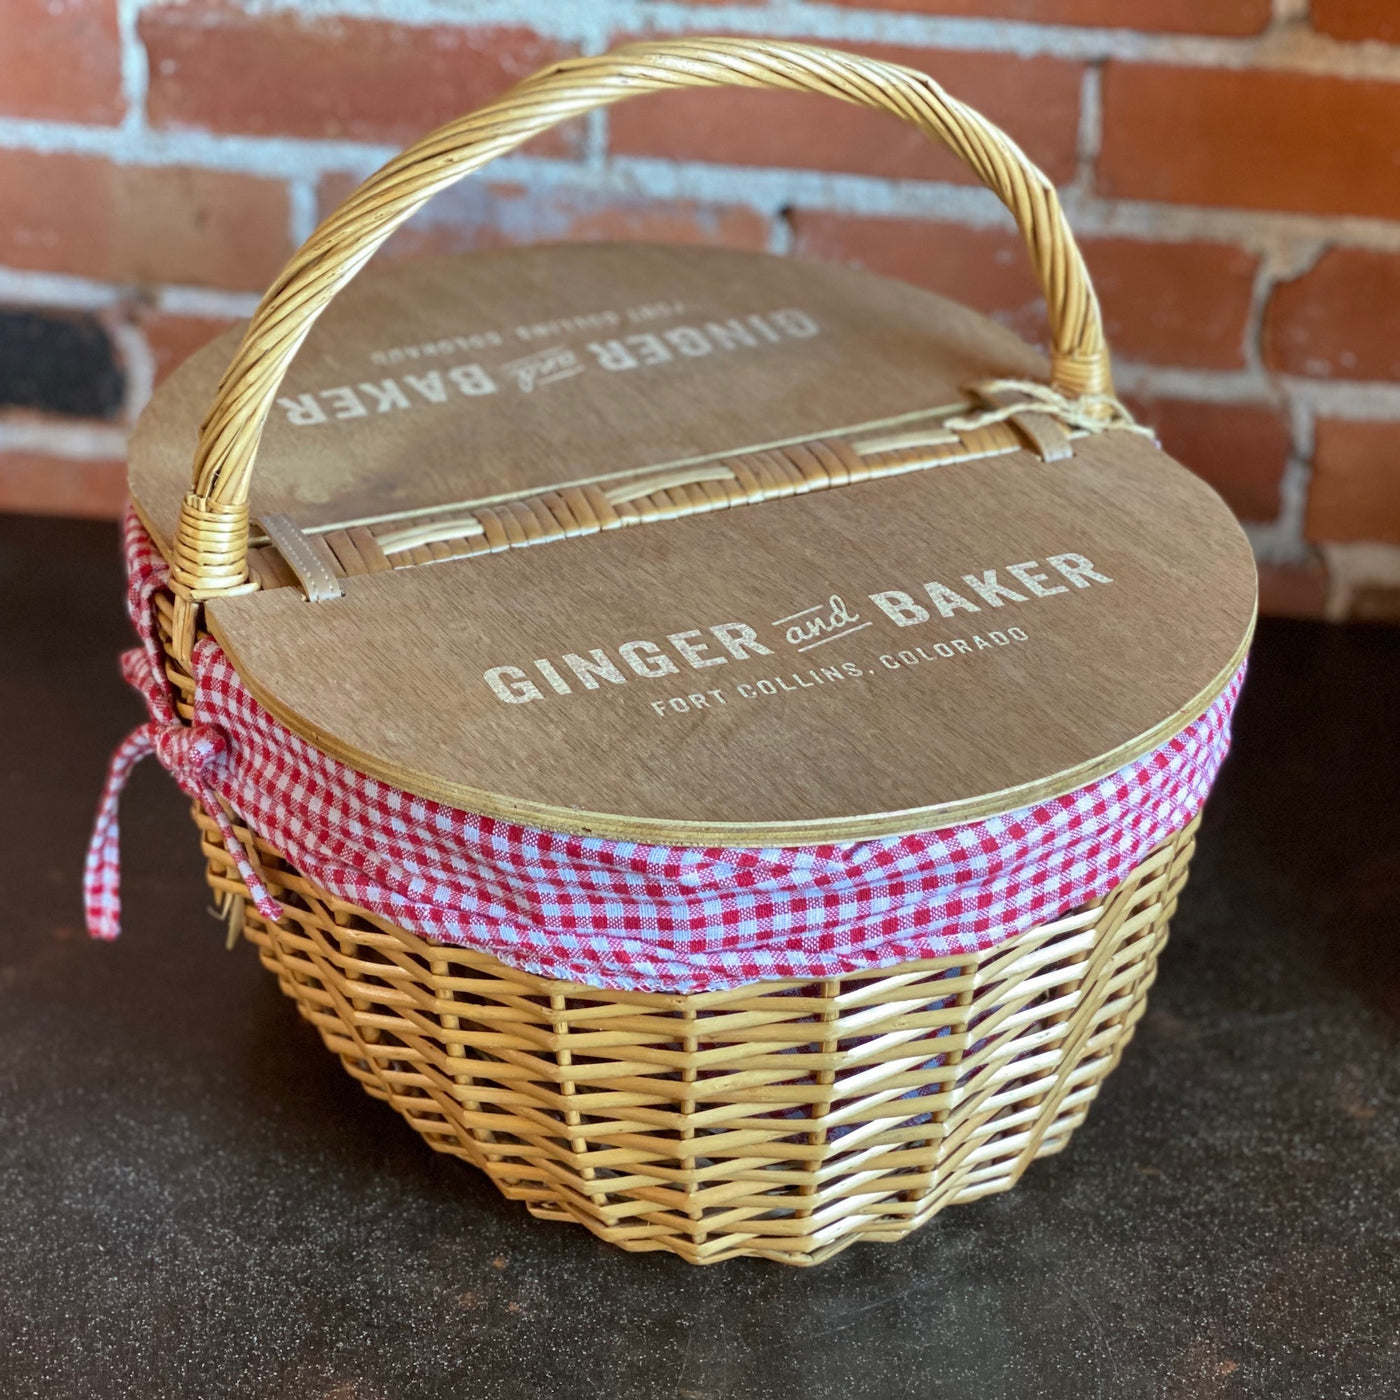 Ginger and Baker Picnic Basket